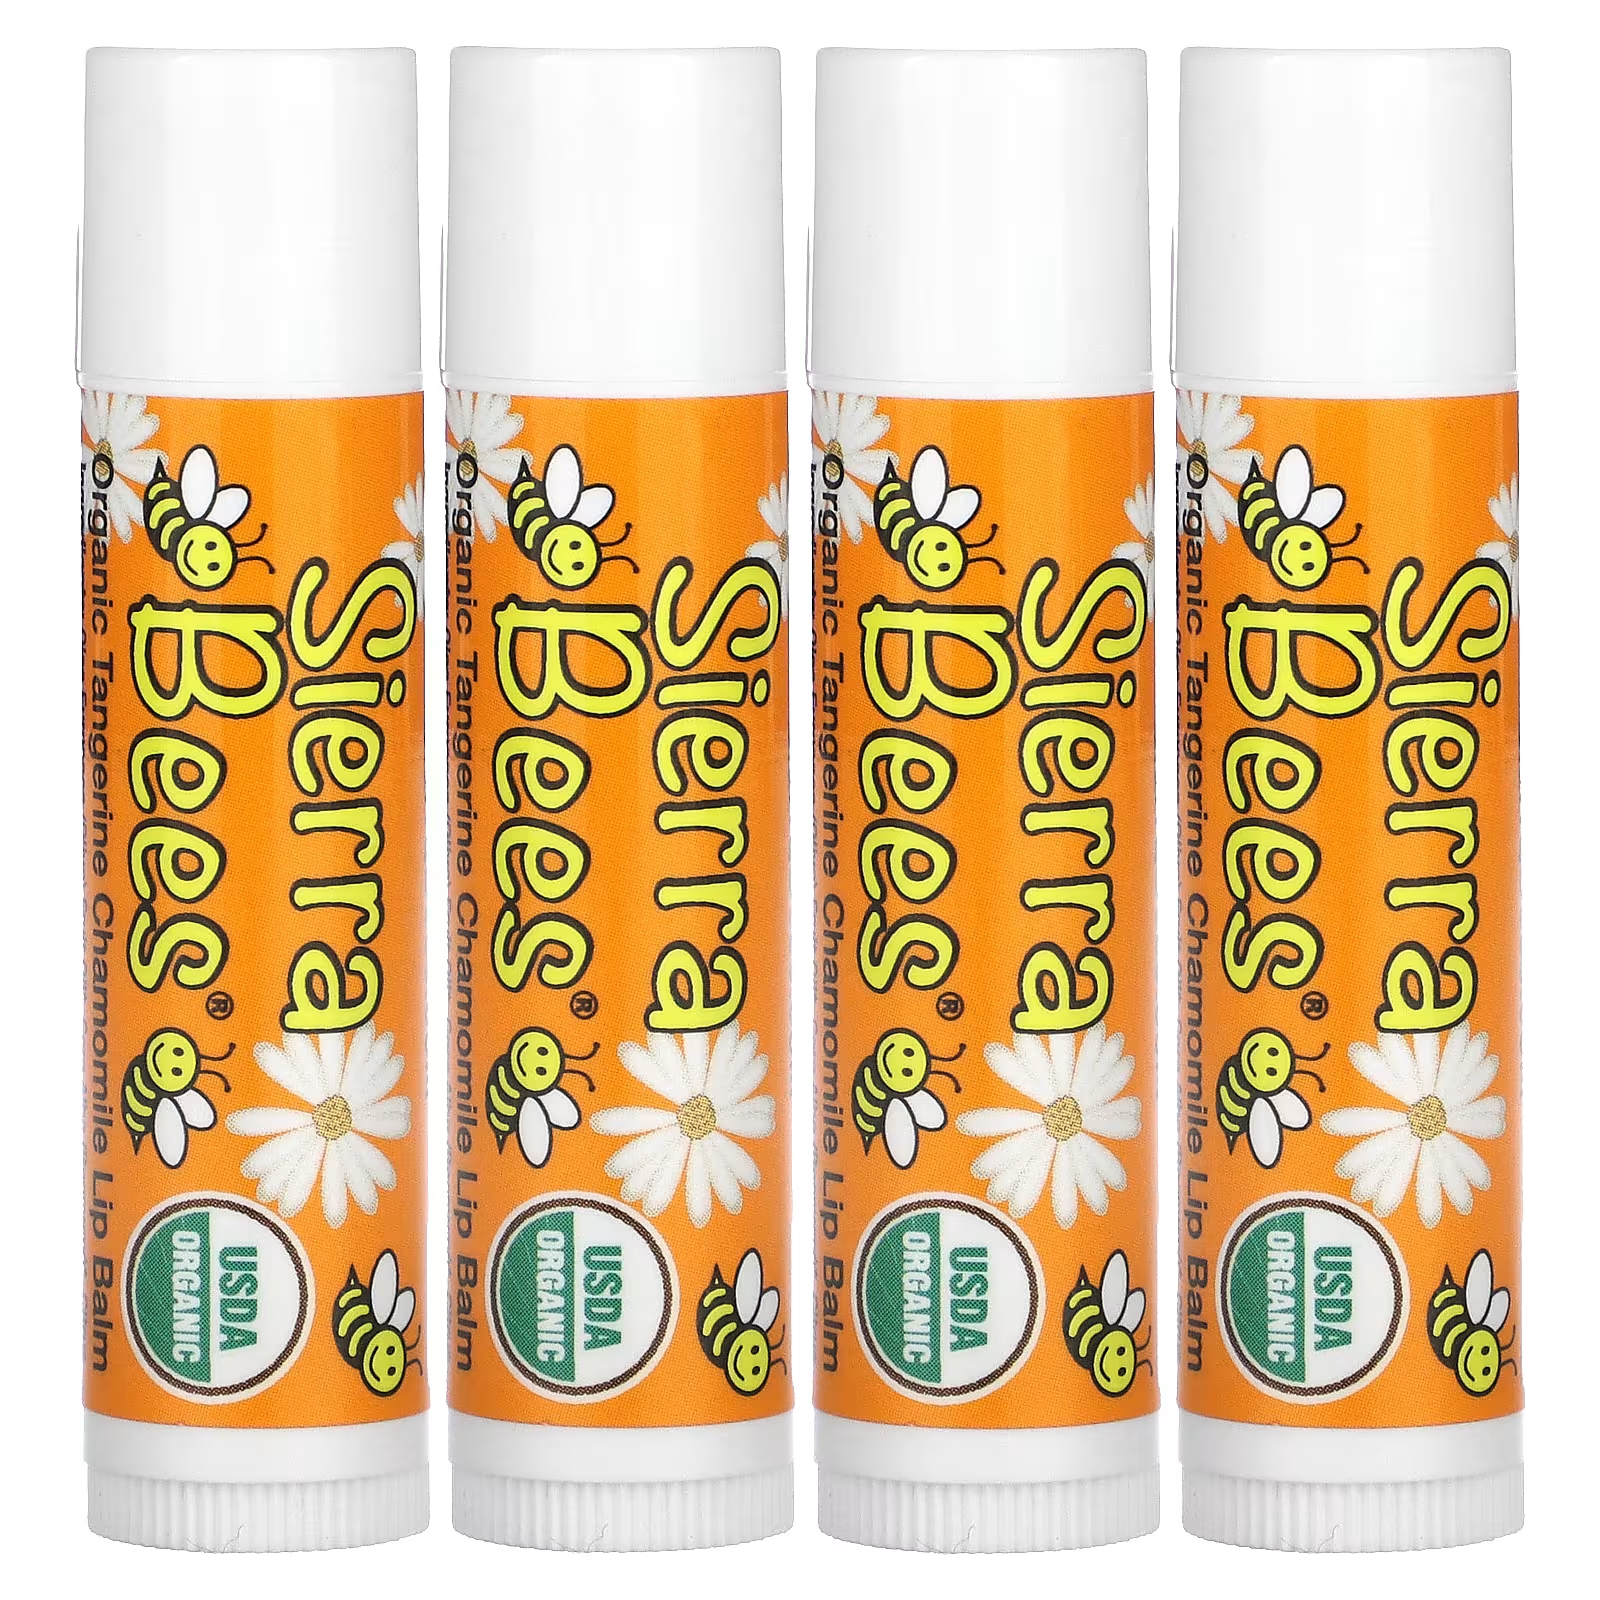 Органические бальзамы для губ Sierra Bees «Мандарин и ромашка», 4 упаковки по 0,15 унции (4,25 г) каждая sierra bees набор органических бальзамов для губ 8 в упаковке 4 25 г 15 унций каждый